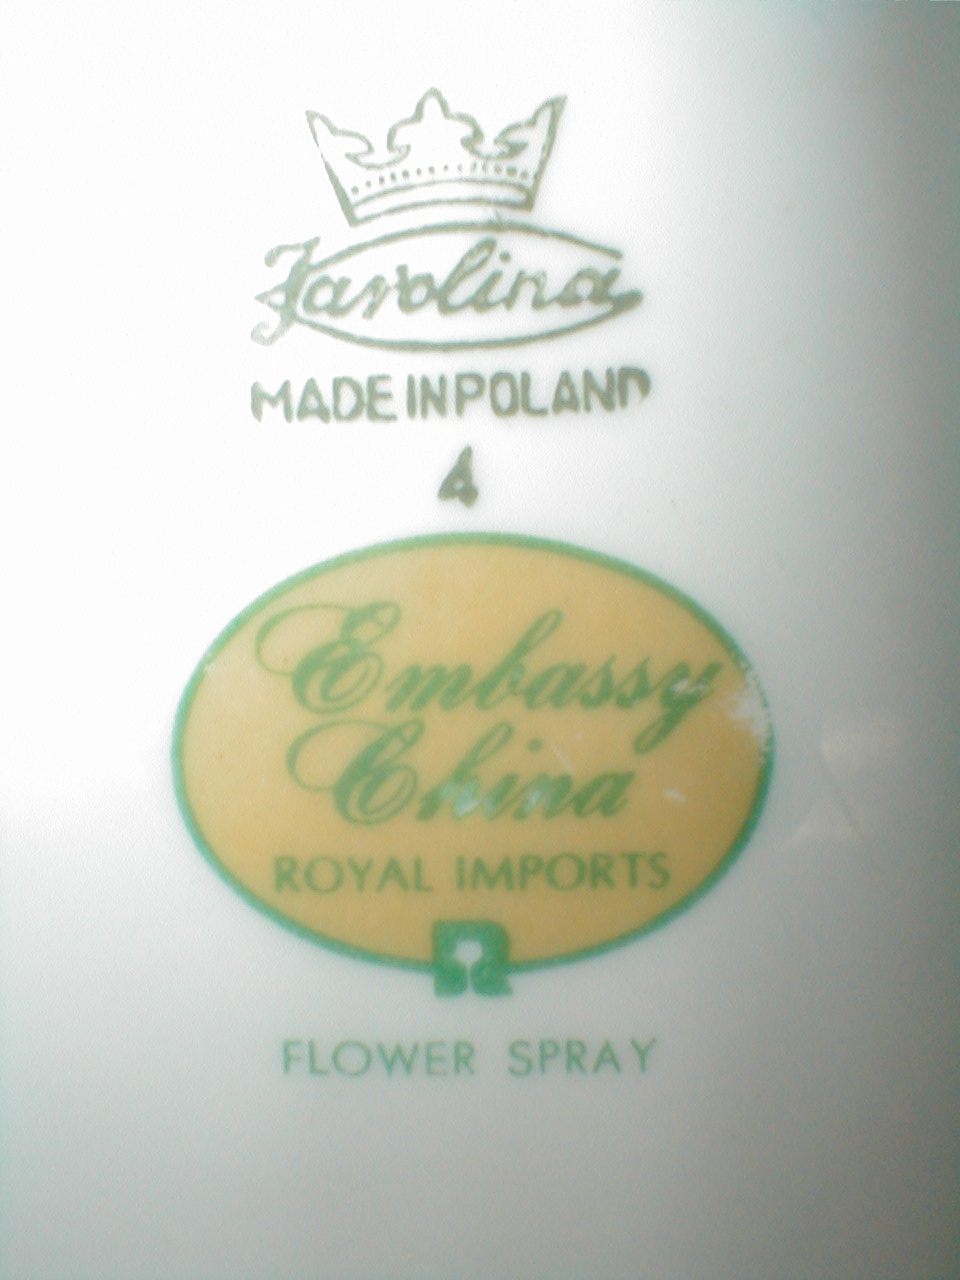 Flower Spray EMBASSY CHINA POLAND 4.JPG